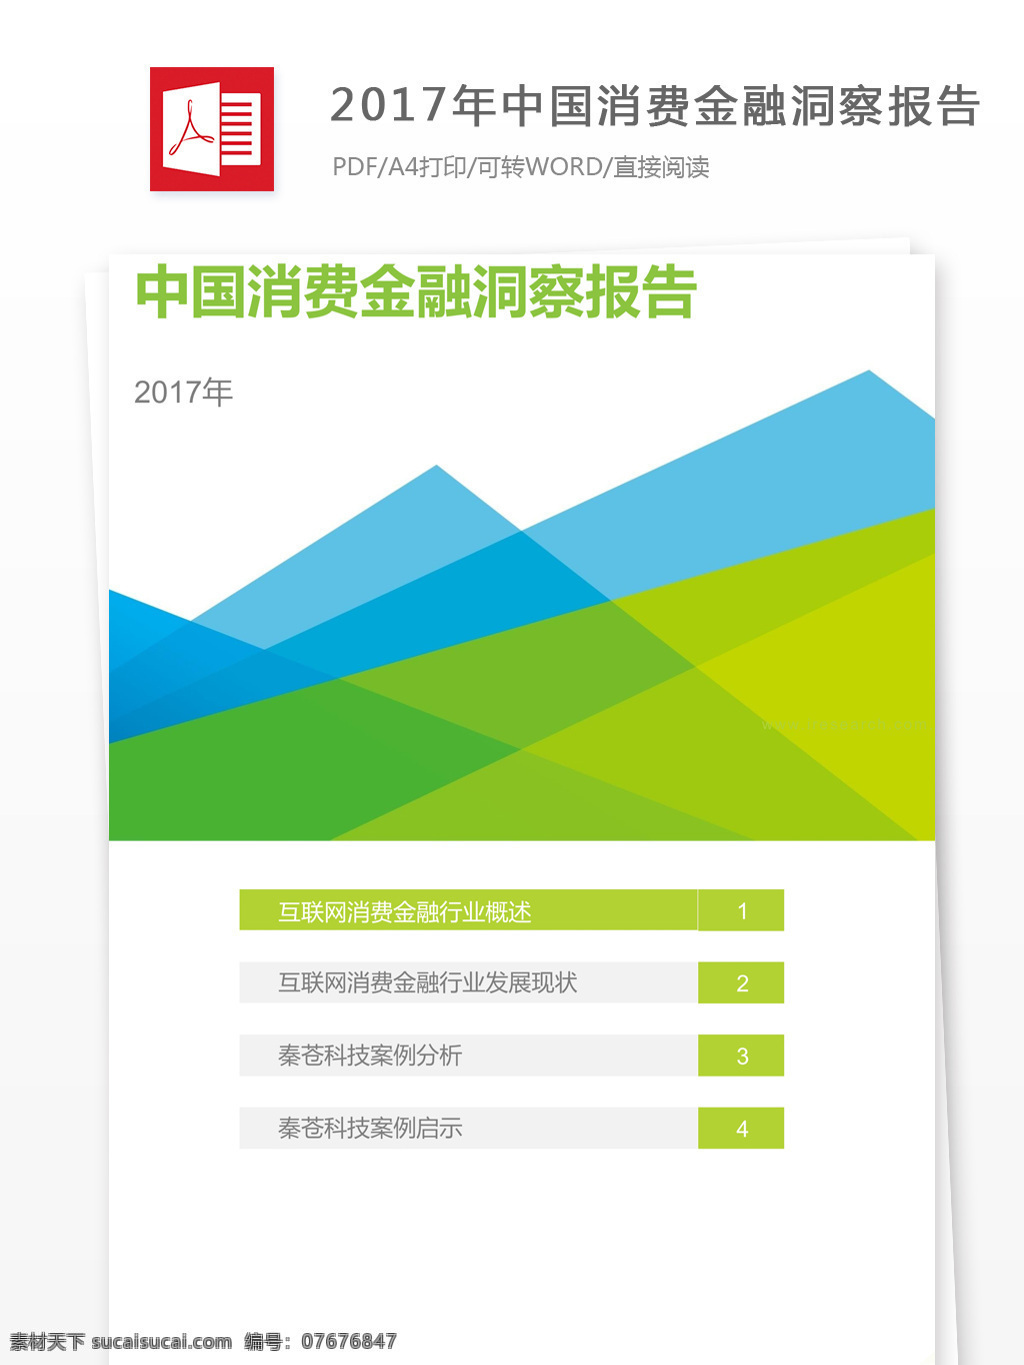 2017 年 中国 消费 金融 洞察 报告 总结 中国消费者 金融分析报告 洞察报告 行业分析